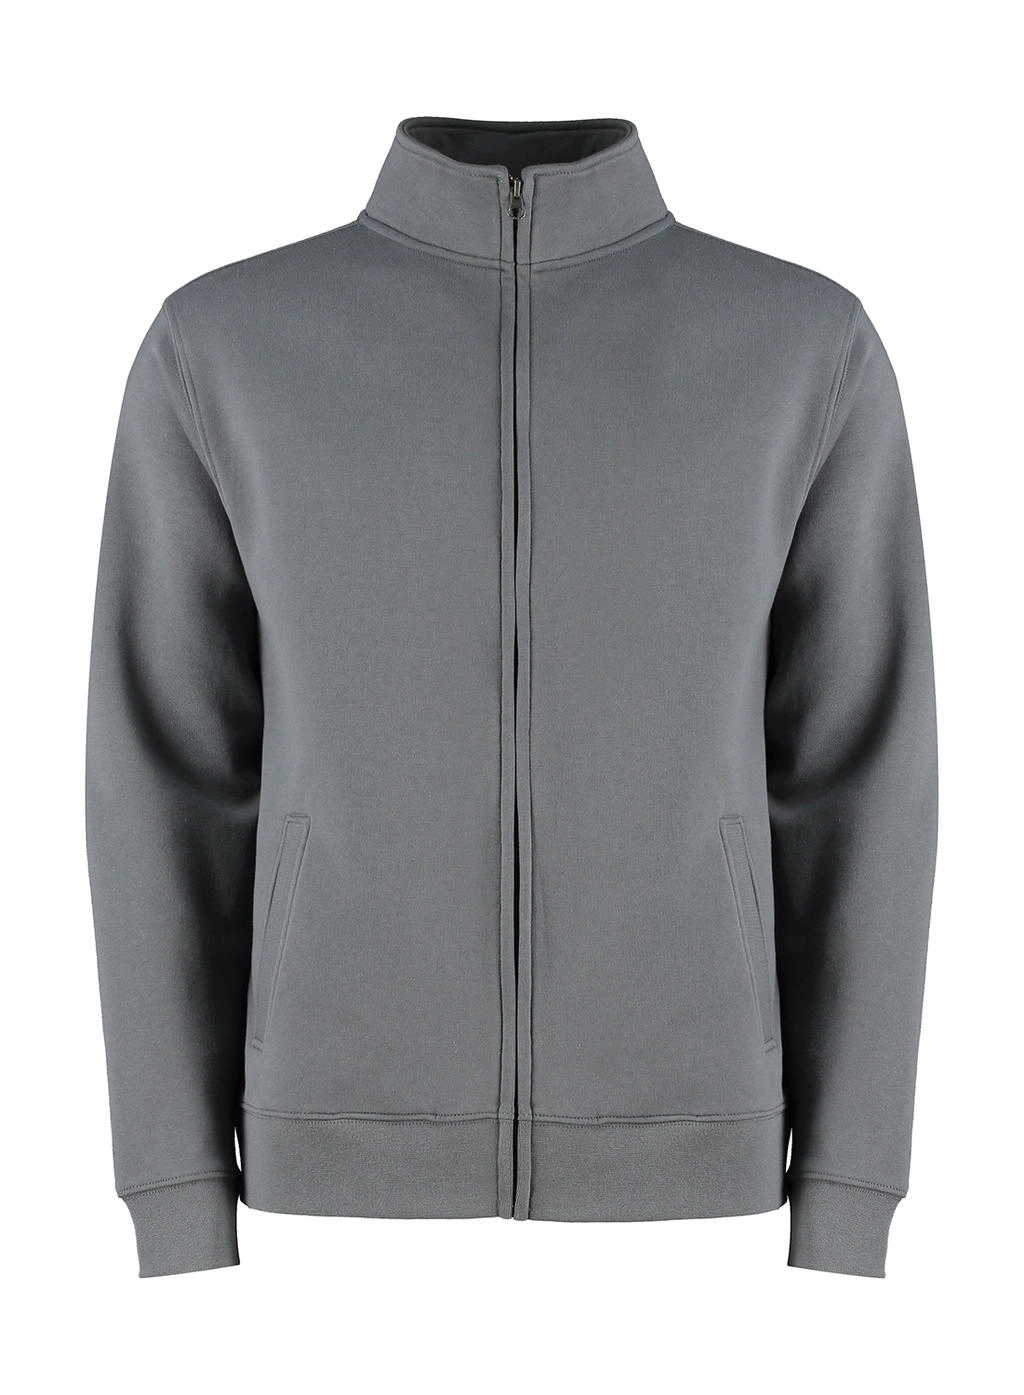 Regular Fit Zipped Sweatshirt zum Besticken und Bedrucken in der Farbe Dark Grey Marl mit Ihren Logo, Schriftzug oder Motiv.